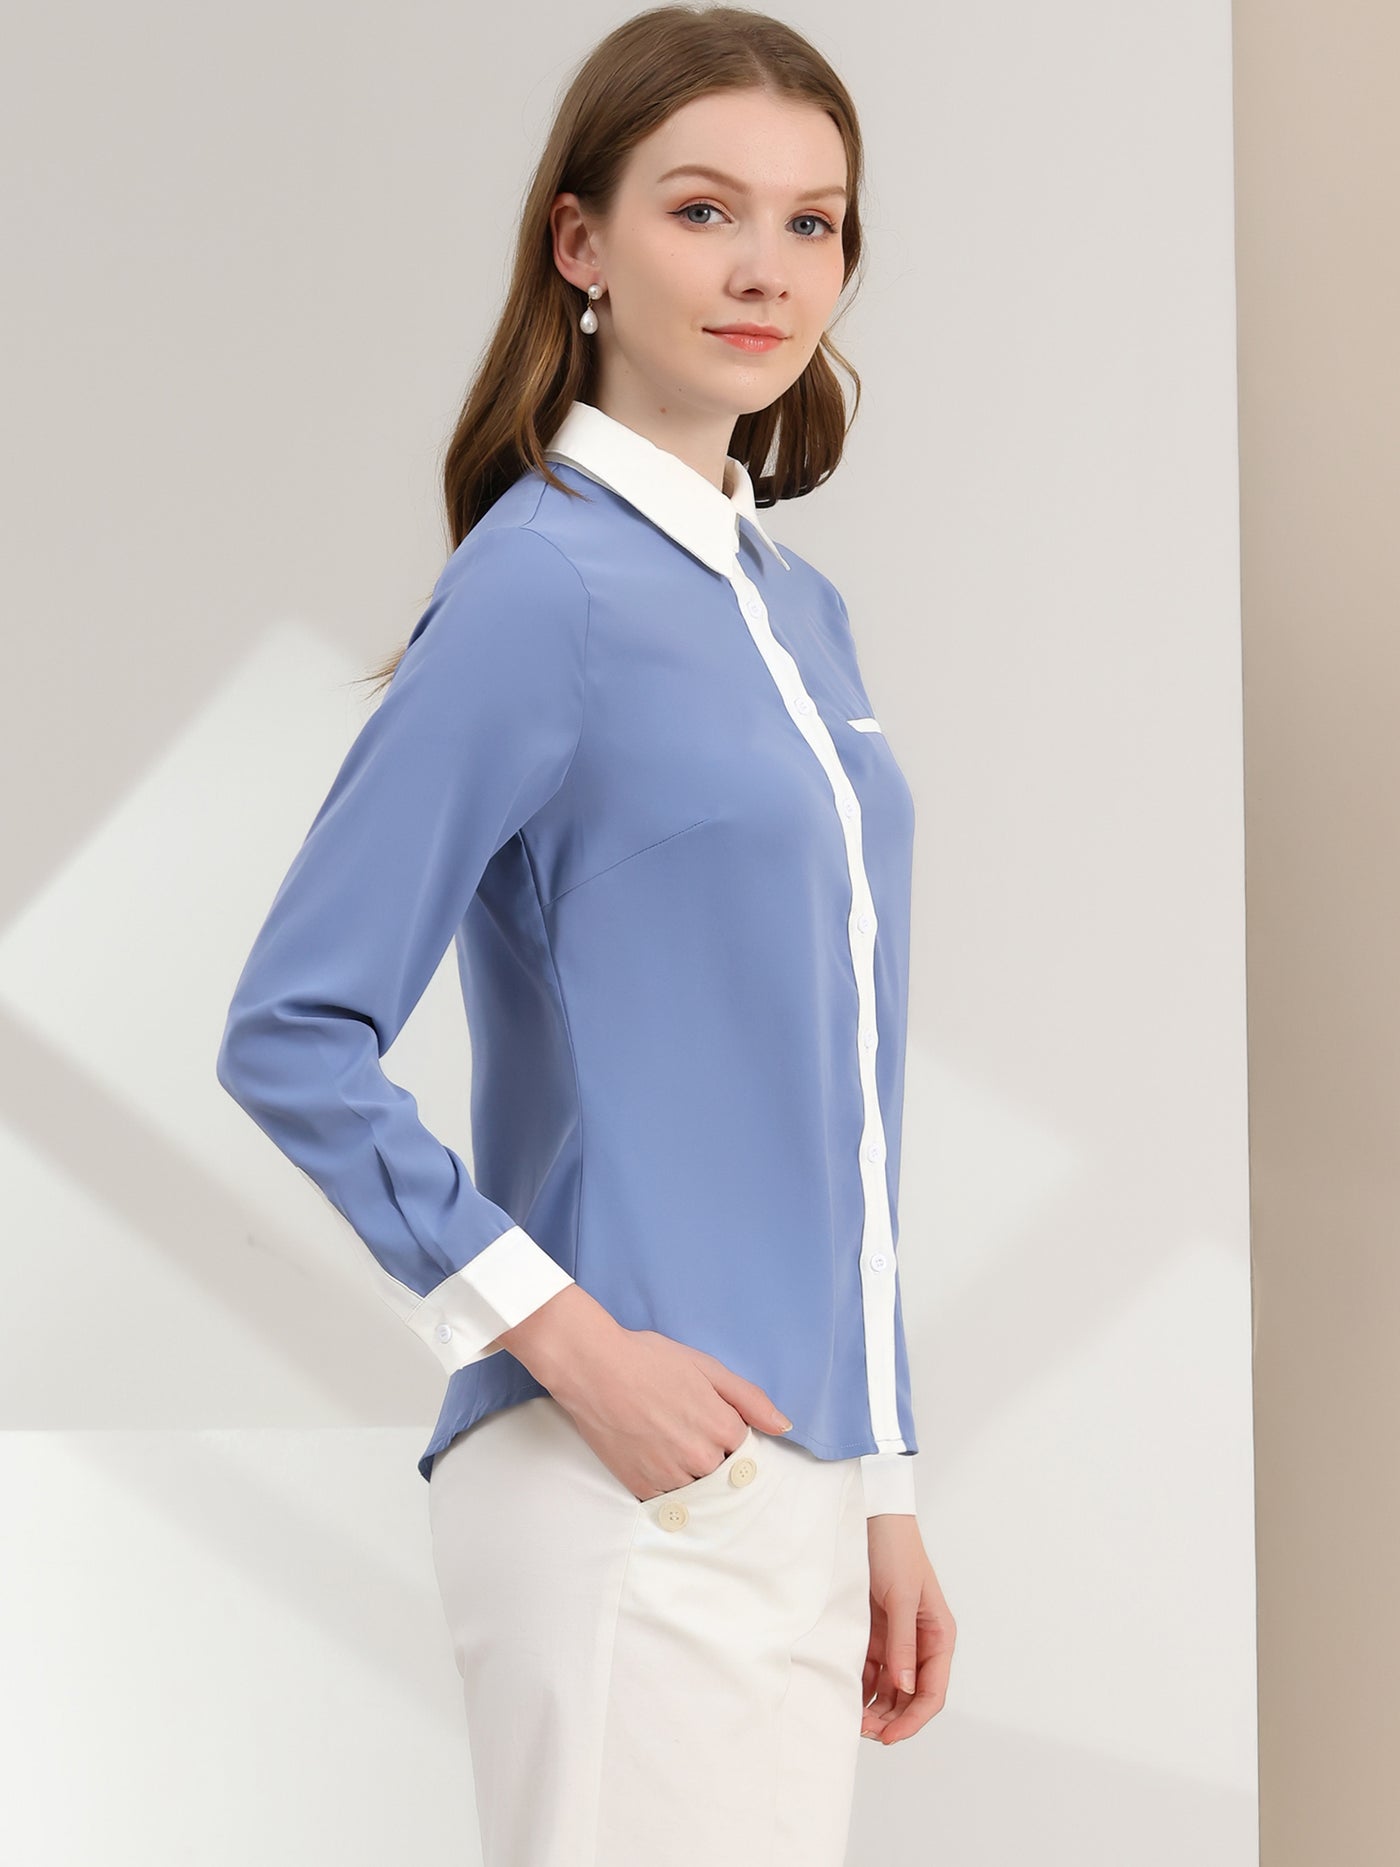 Allegra K Contrast Collar Shirt Chiffon Long Sleeve Work Office Blouse